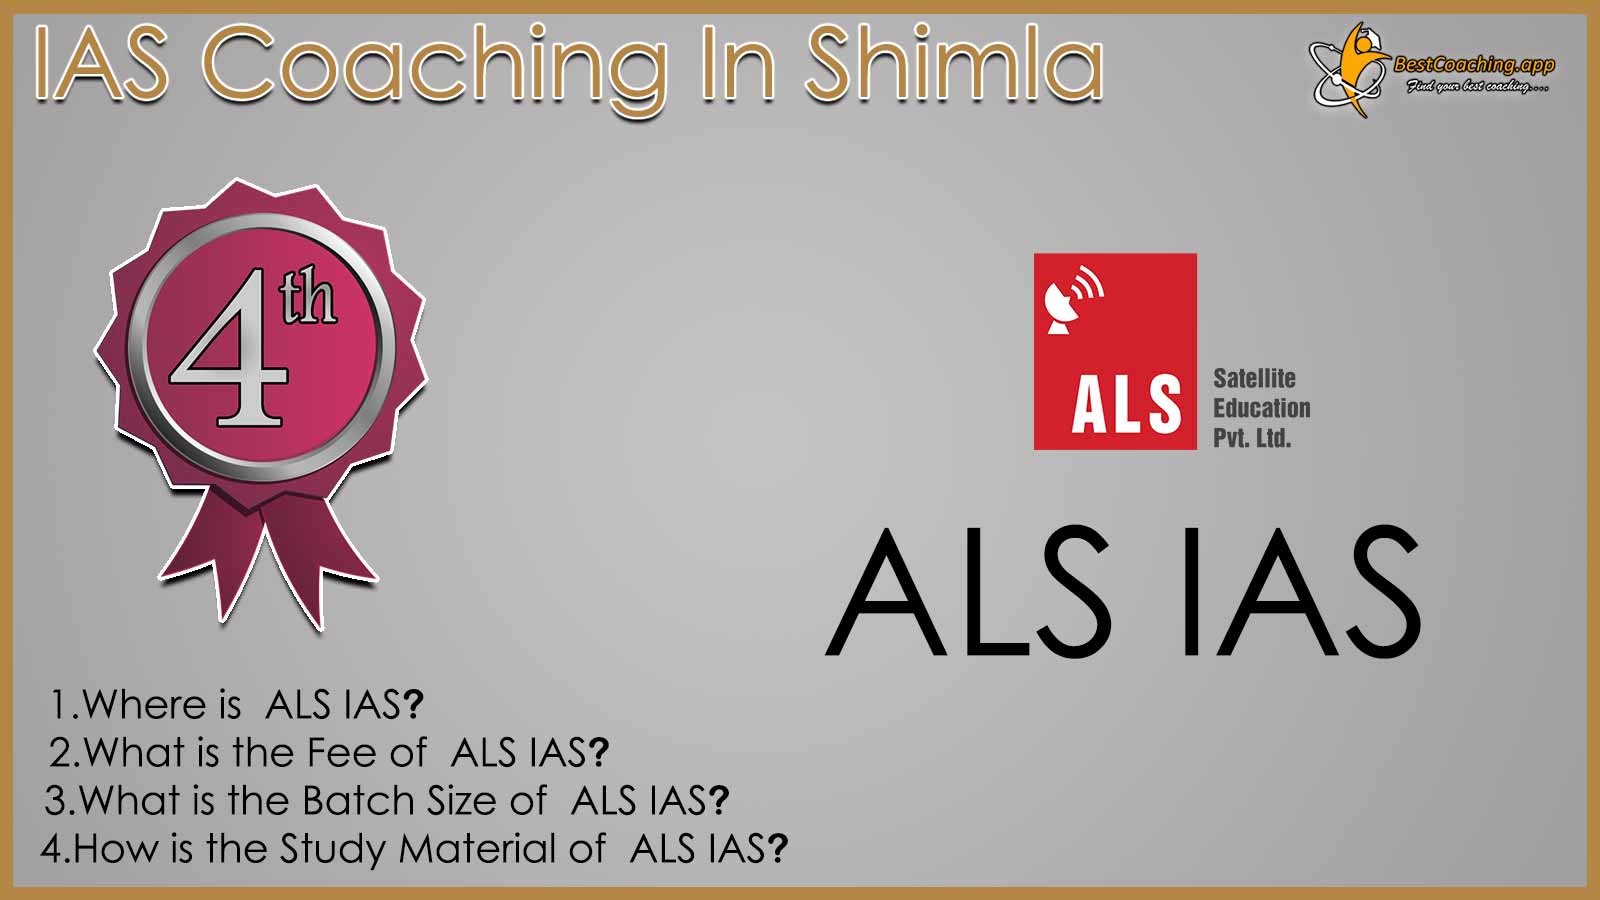 Top IAS Coaching in Shimla